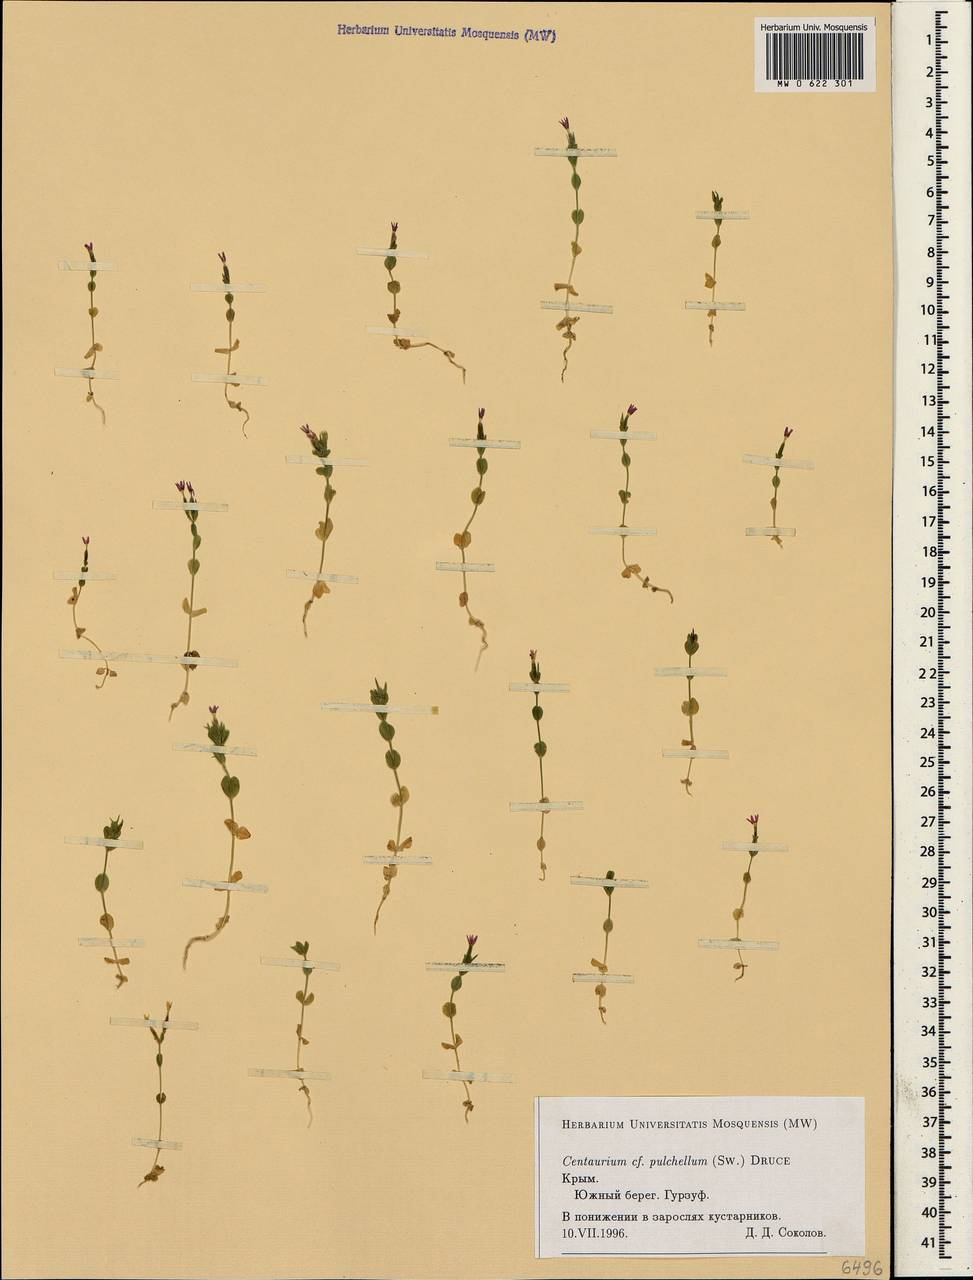 Centaurium pulchellum, Crimea (KRYM) (Russia)